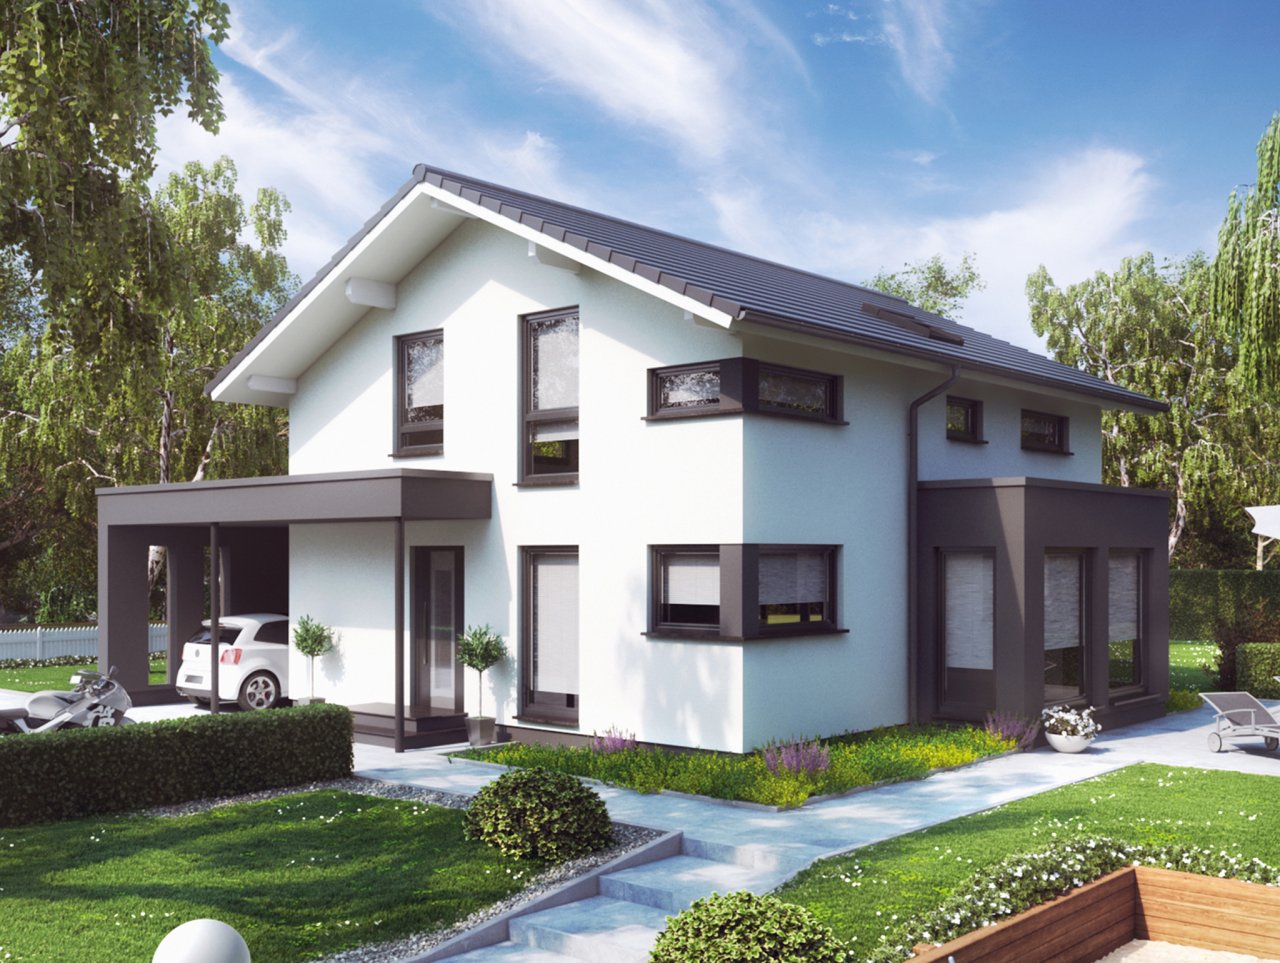 Modernes energieeffizientes Einfamilienhaus mit Festpreis-Garantie